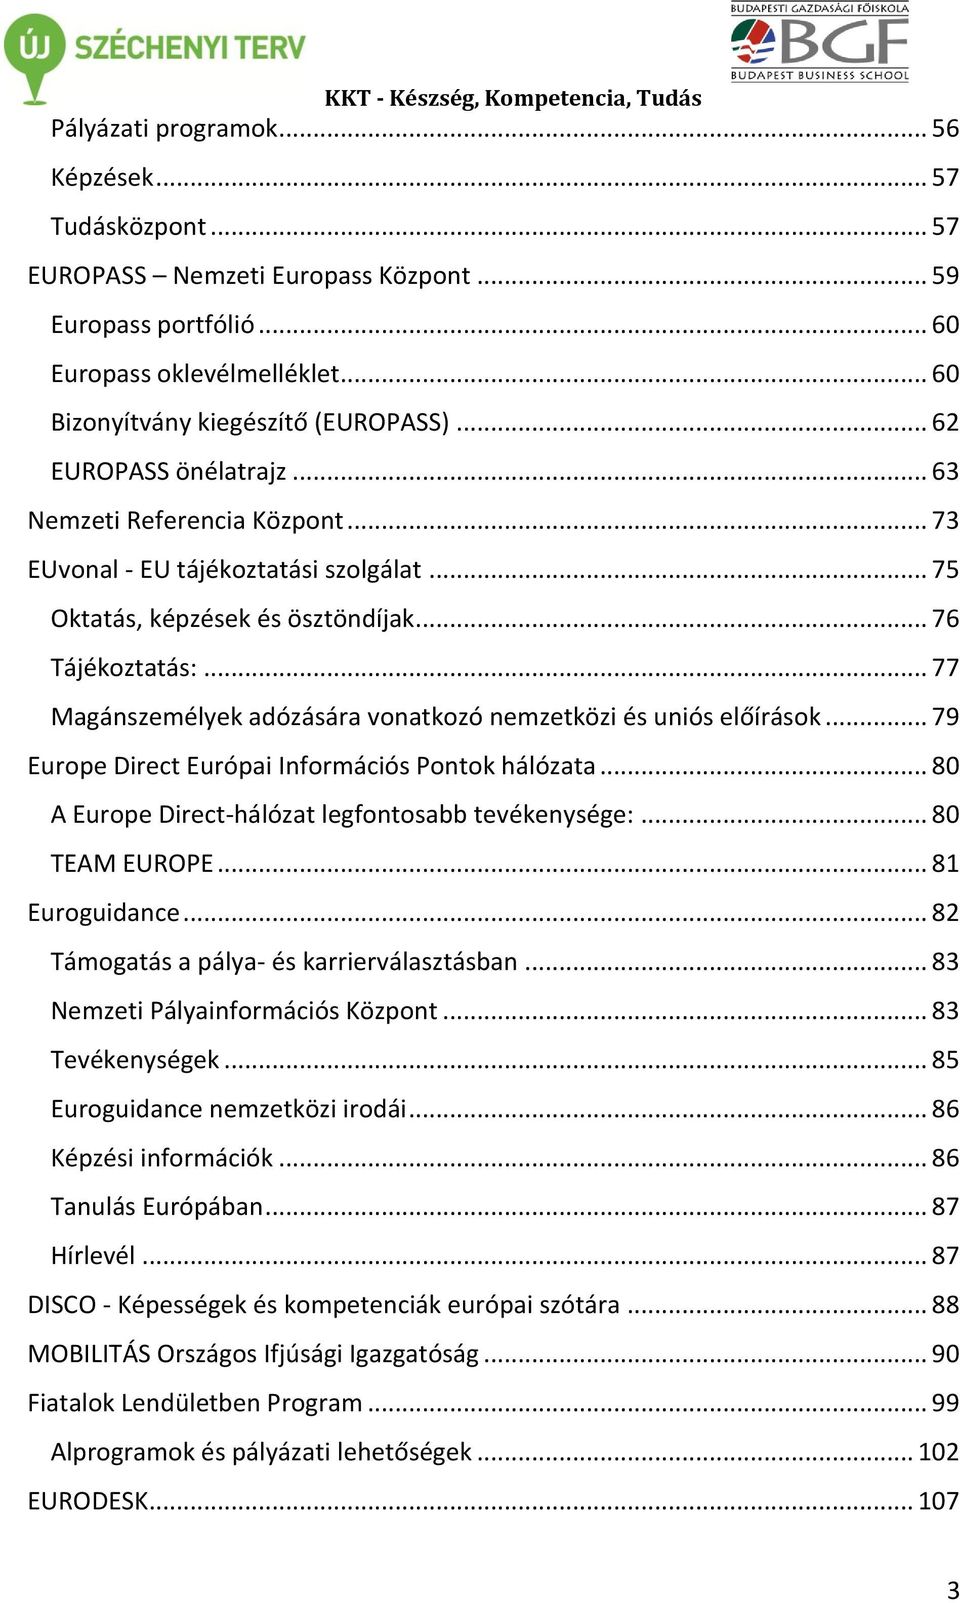 .. 77 Magánszemélyek adózására vonatkozó nemzetközi és uniós előírások... 79 Europe Direct Európai Információs Pontok hálózata... 80 A Europe Direct-hálózat legfontosabb tevékenysége:... 80 TEAM EUROPE.